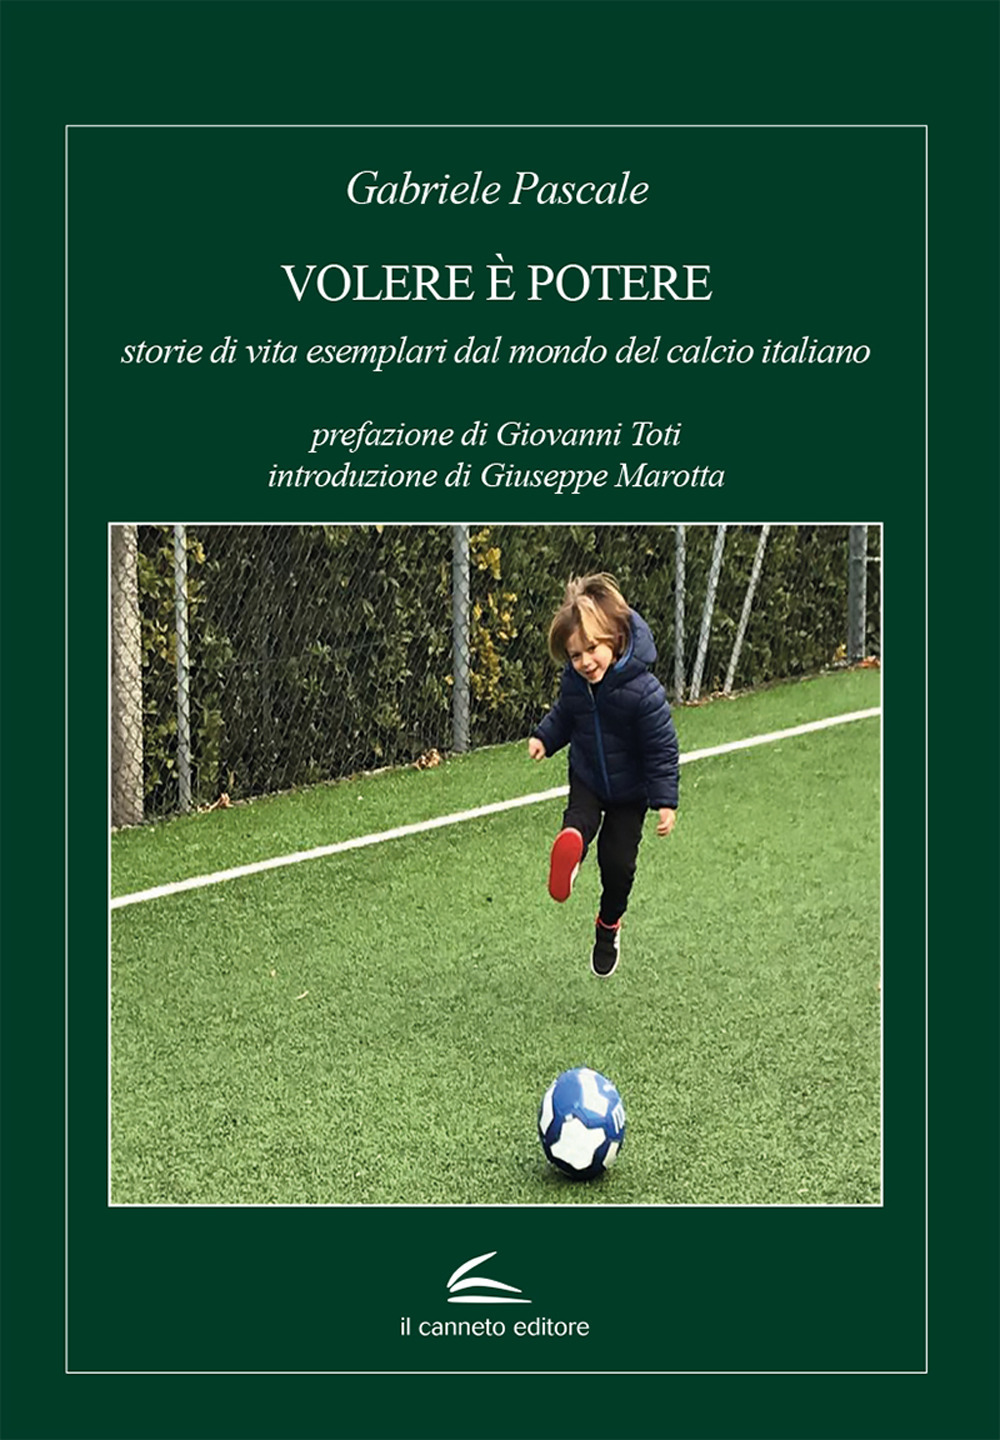 Volere è potere: storie di vita esemplari dal mondo del calcio italiano